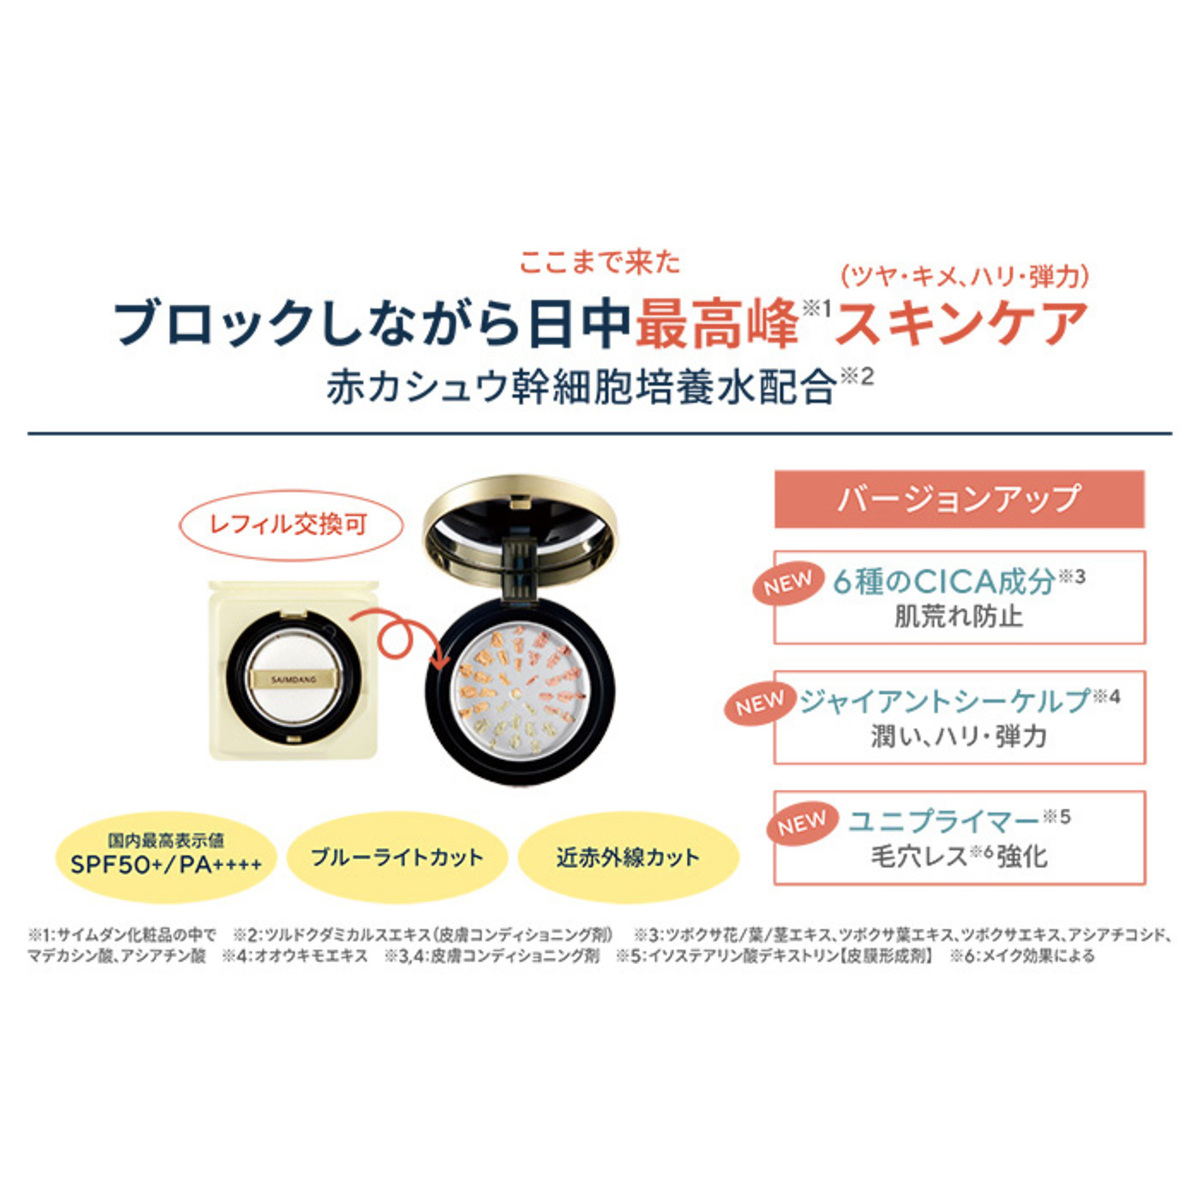 サイムダンプレミアム4Kサンプロテクトパウダー特別セット - QVC.jp